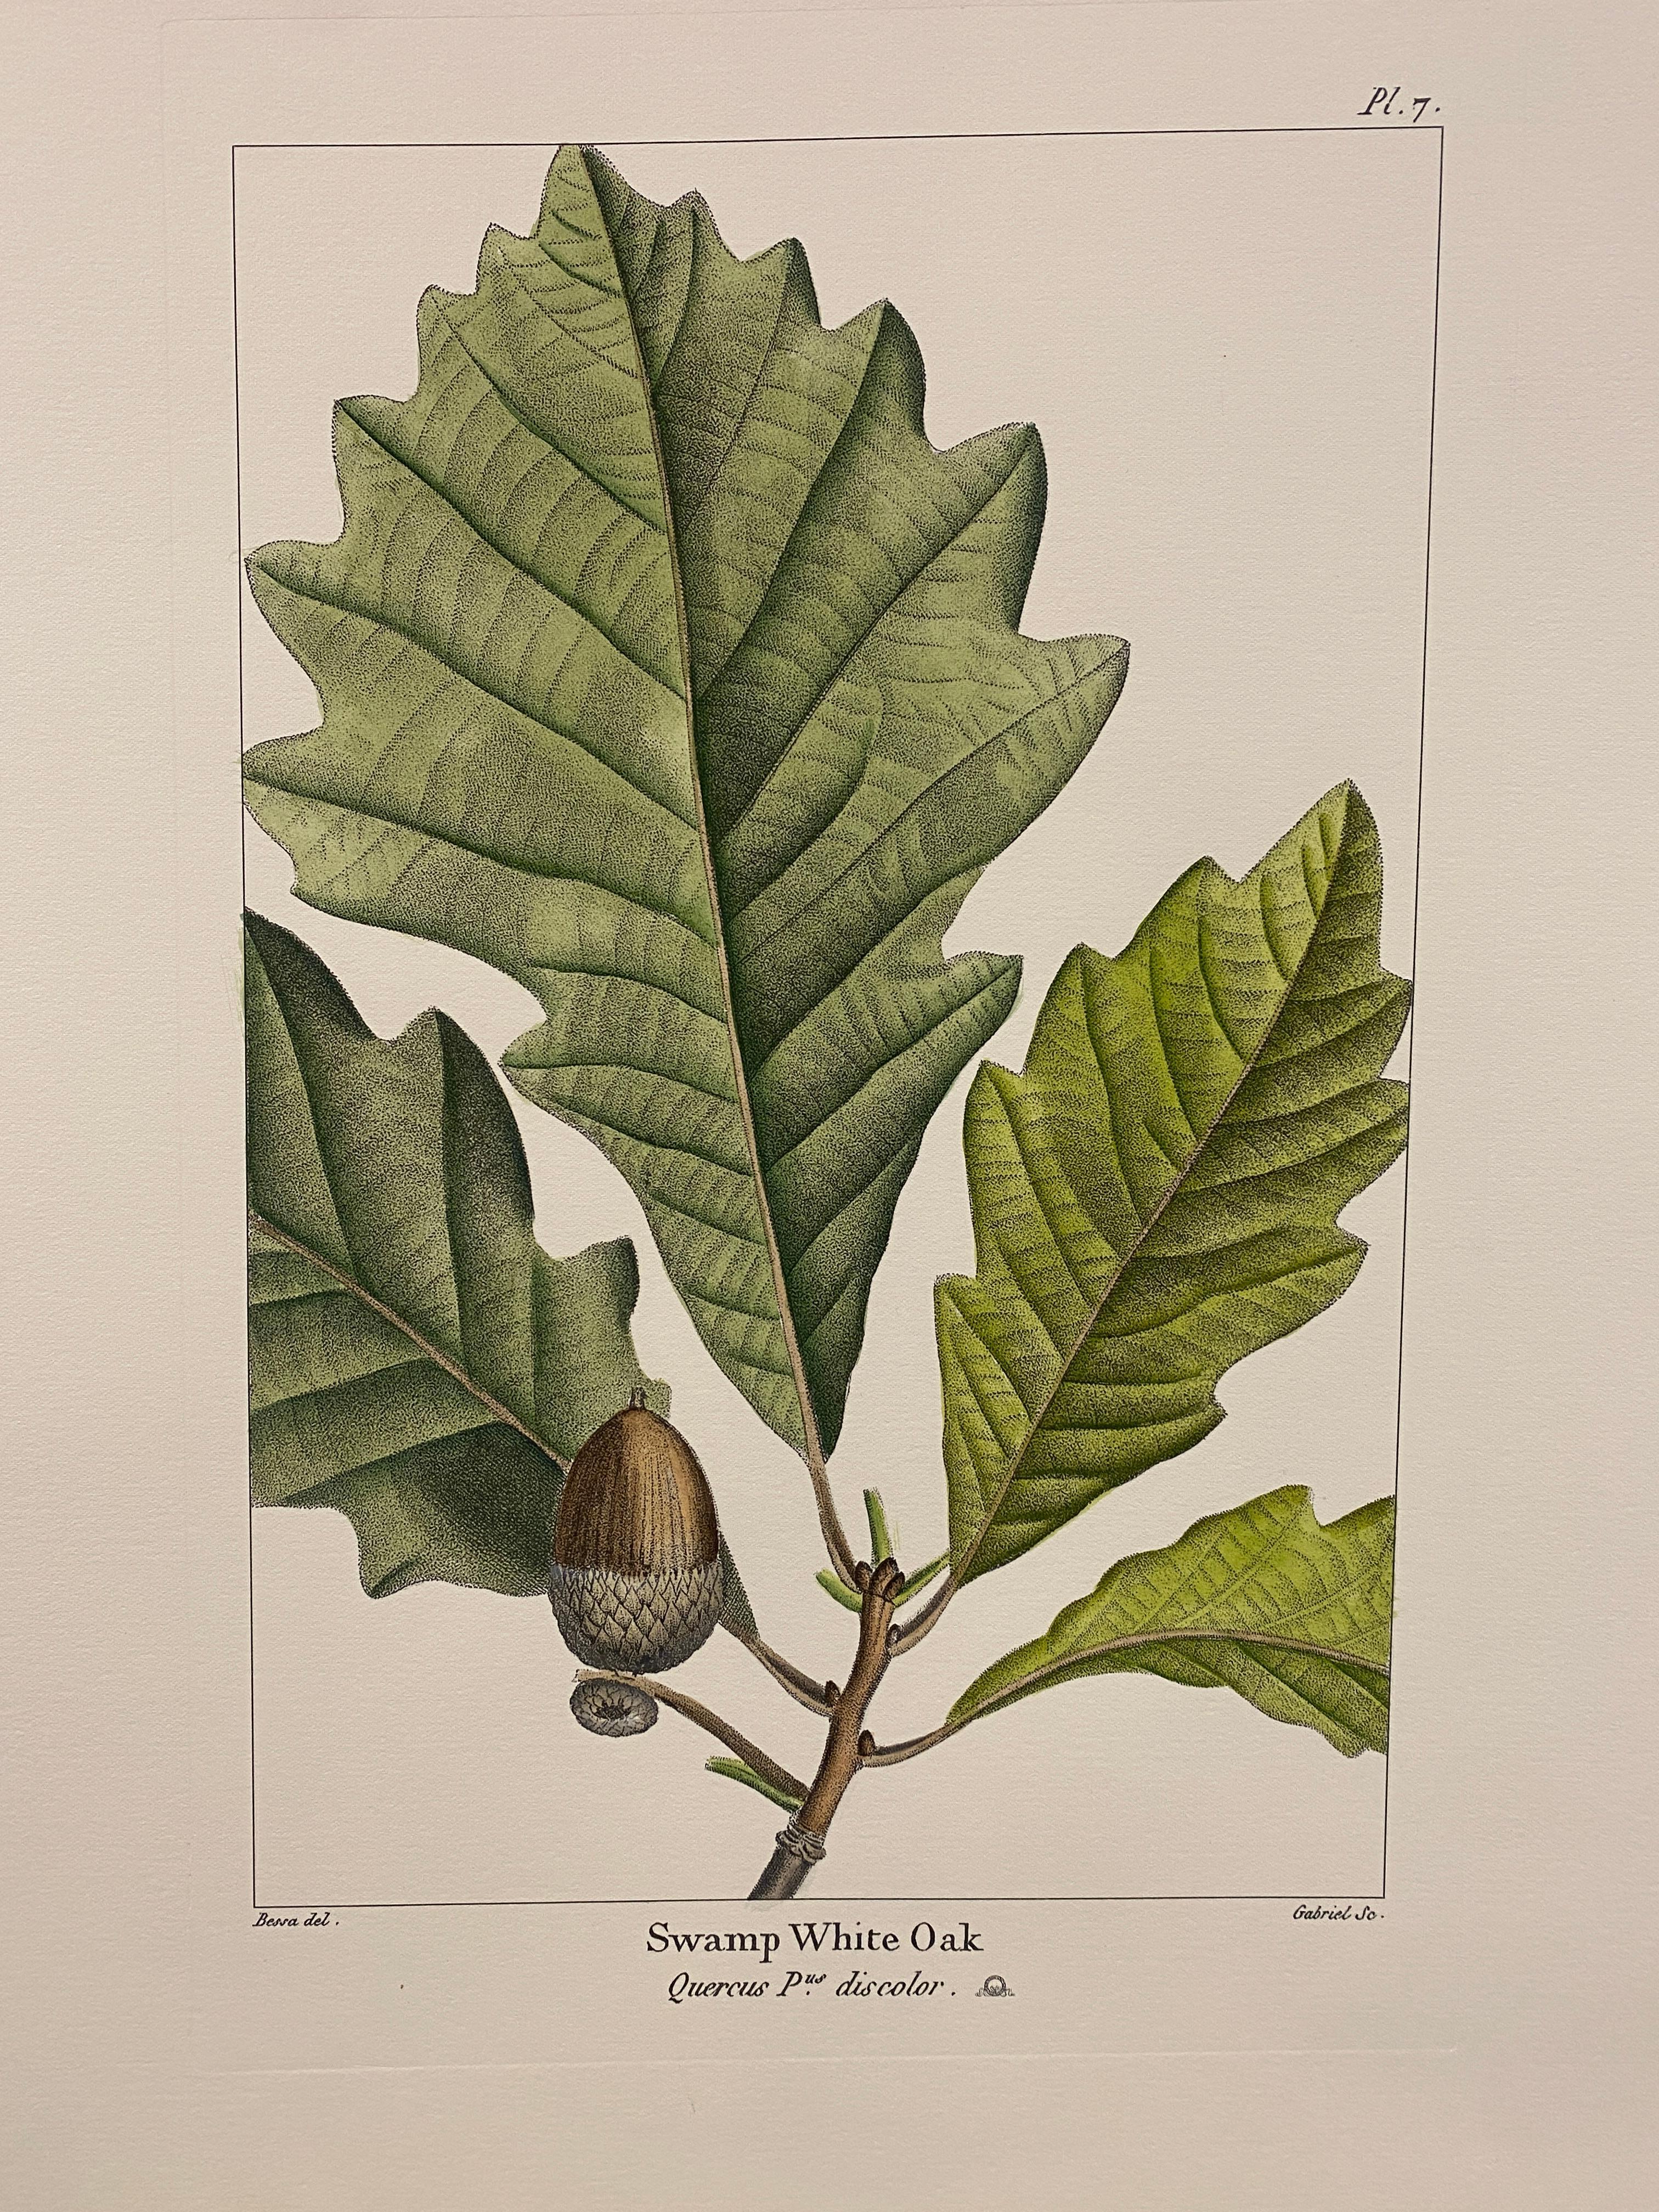 Druck aus der Collection Botanique Trees, der die Sumpf-Weißeiche darstellt, angereichert mit Grün- und Brauntönen und Nuancen von Aquarell, um sie realistischer zu machen.

Für eine farbenfrohe Komposition stehen auch verschiedene Blumendrucke von